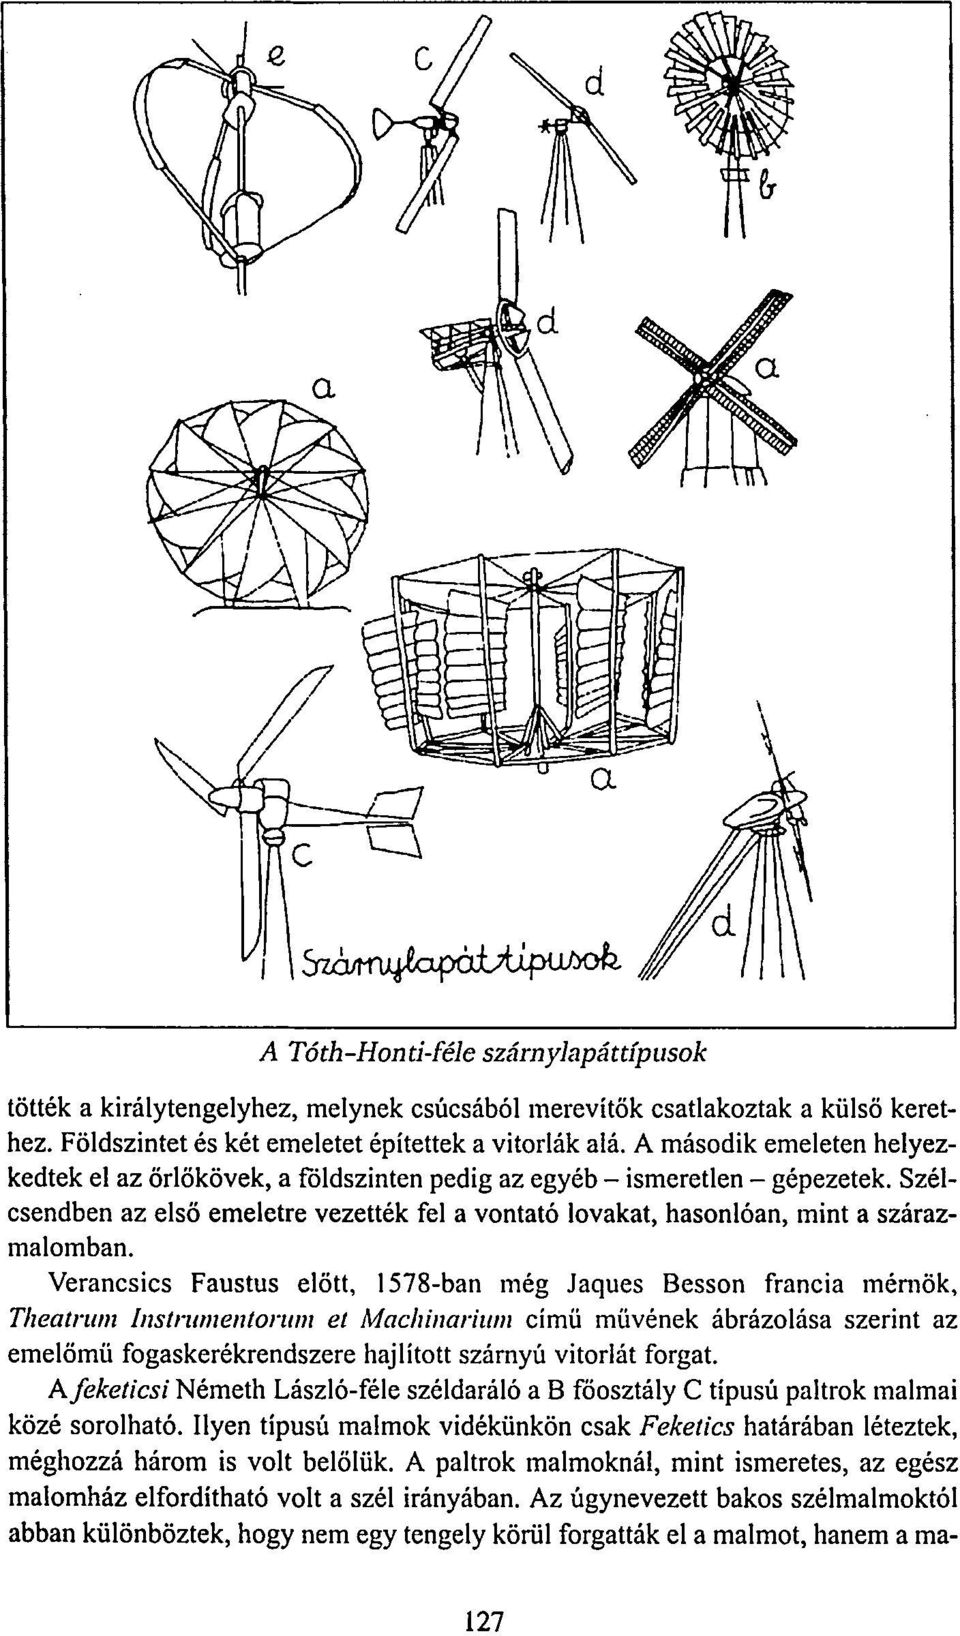 Verancsics Faustus előtt, 1578-ban még Jaques Besson francia mérnök, Theatrum Instmmentorum el Maclnnarium című müvének ábrázolása szerint az emelömü fogaskerékrendszere hajlított szárnyú vitorlát